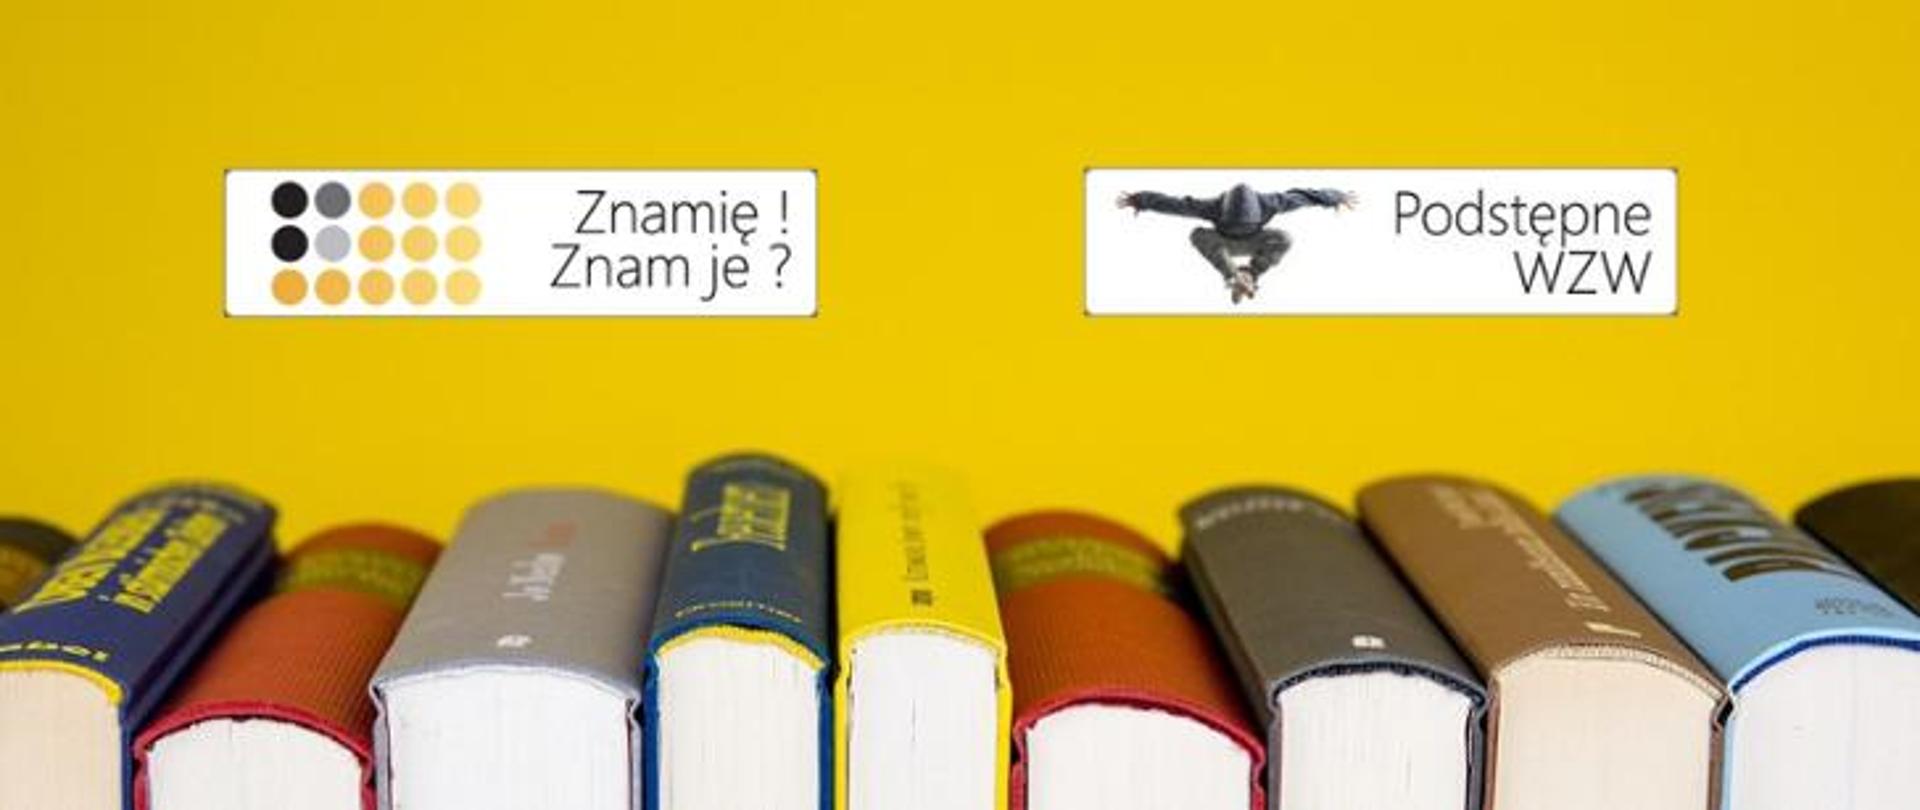 Na dole grafiki znajdują się książki. Tuż nad nimi widnieją dwa loga programów edukacyjnych: Znamię! Znam je? oraz Podstępne WZW. Tło jest żółte.